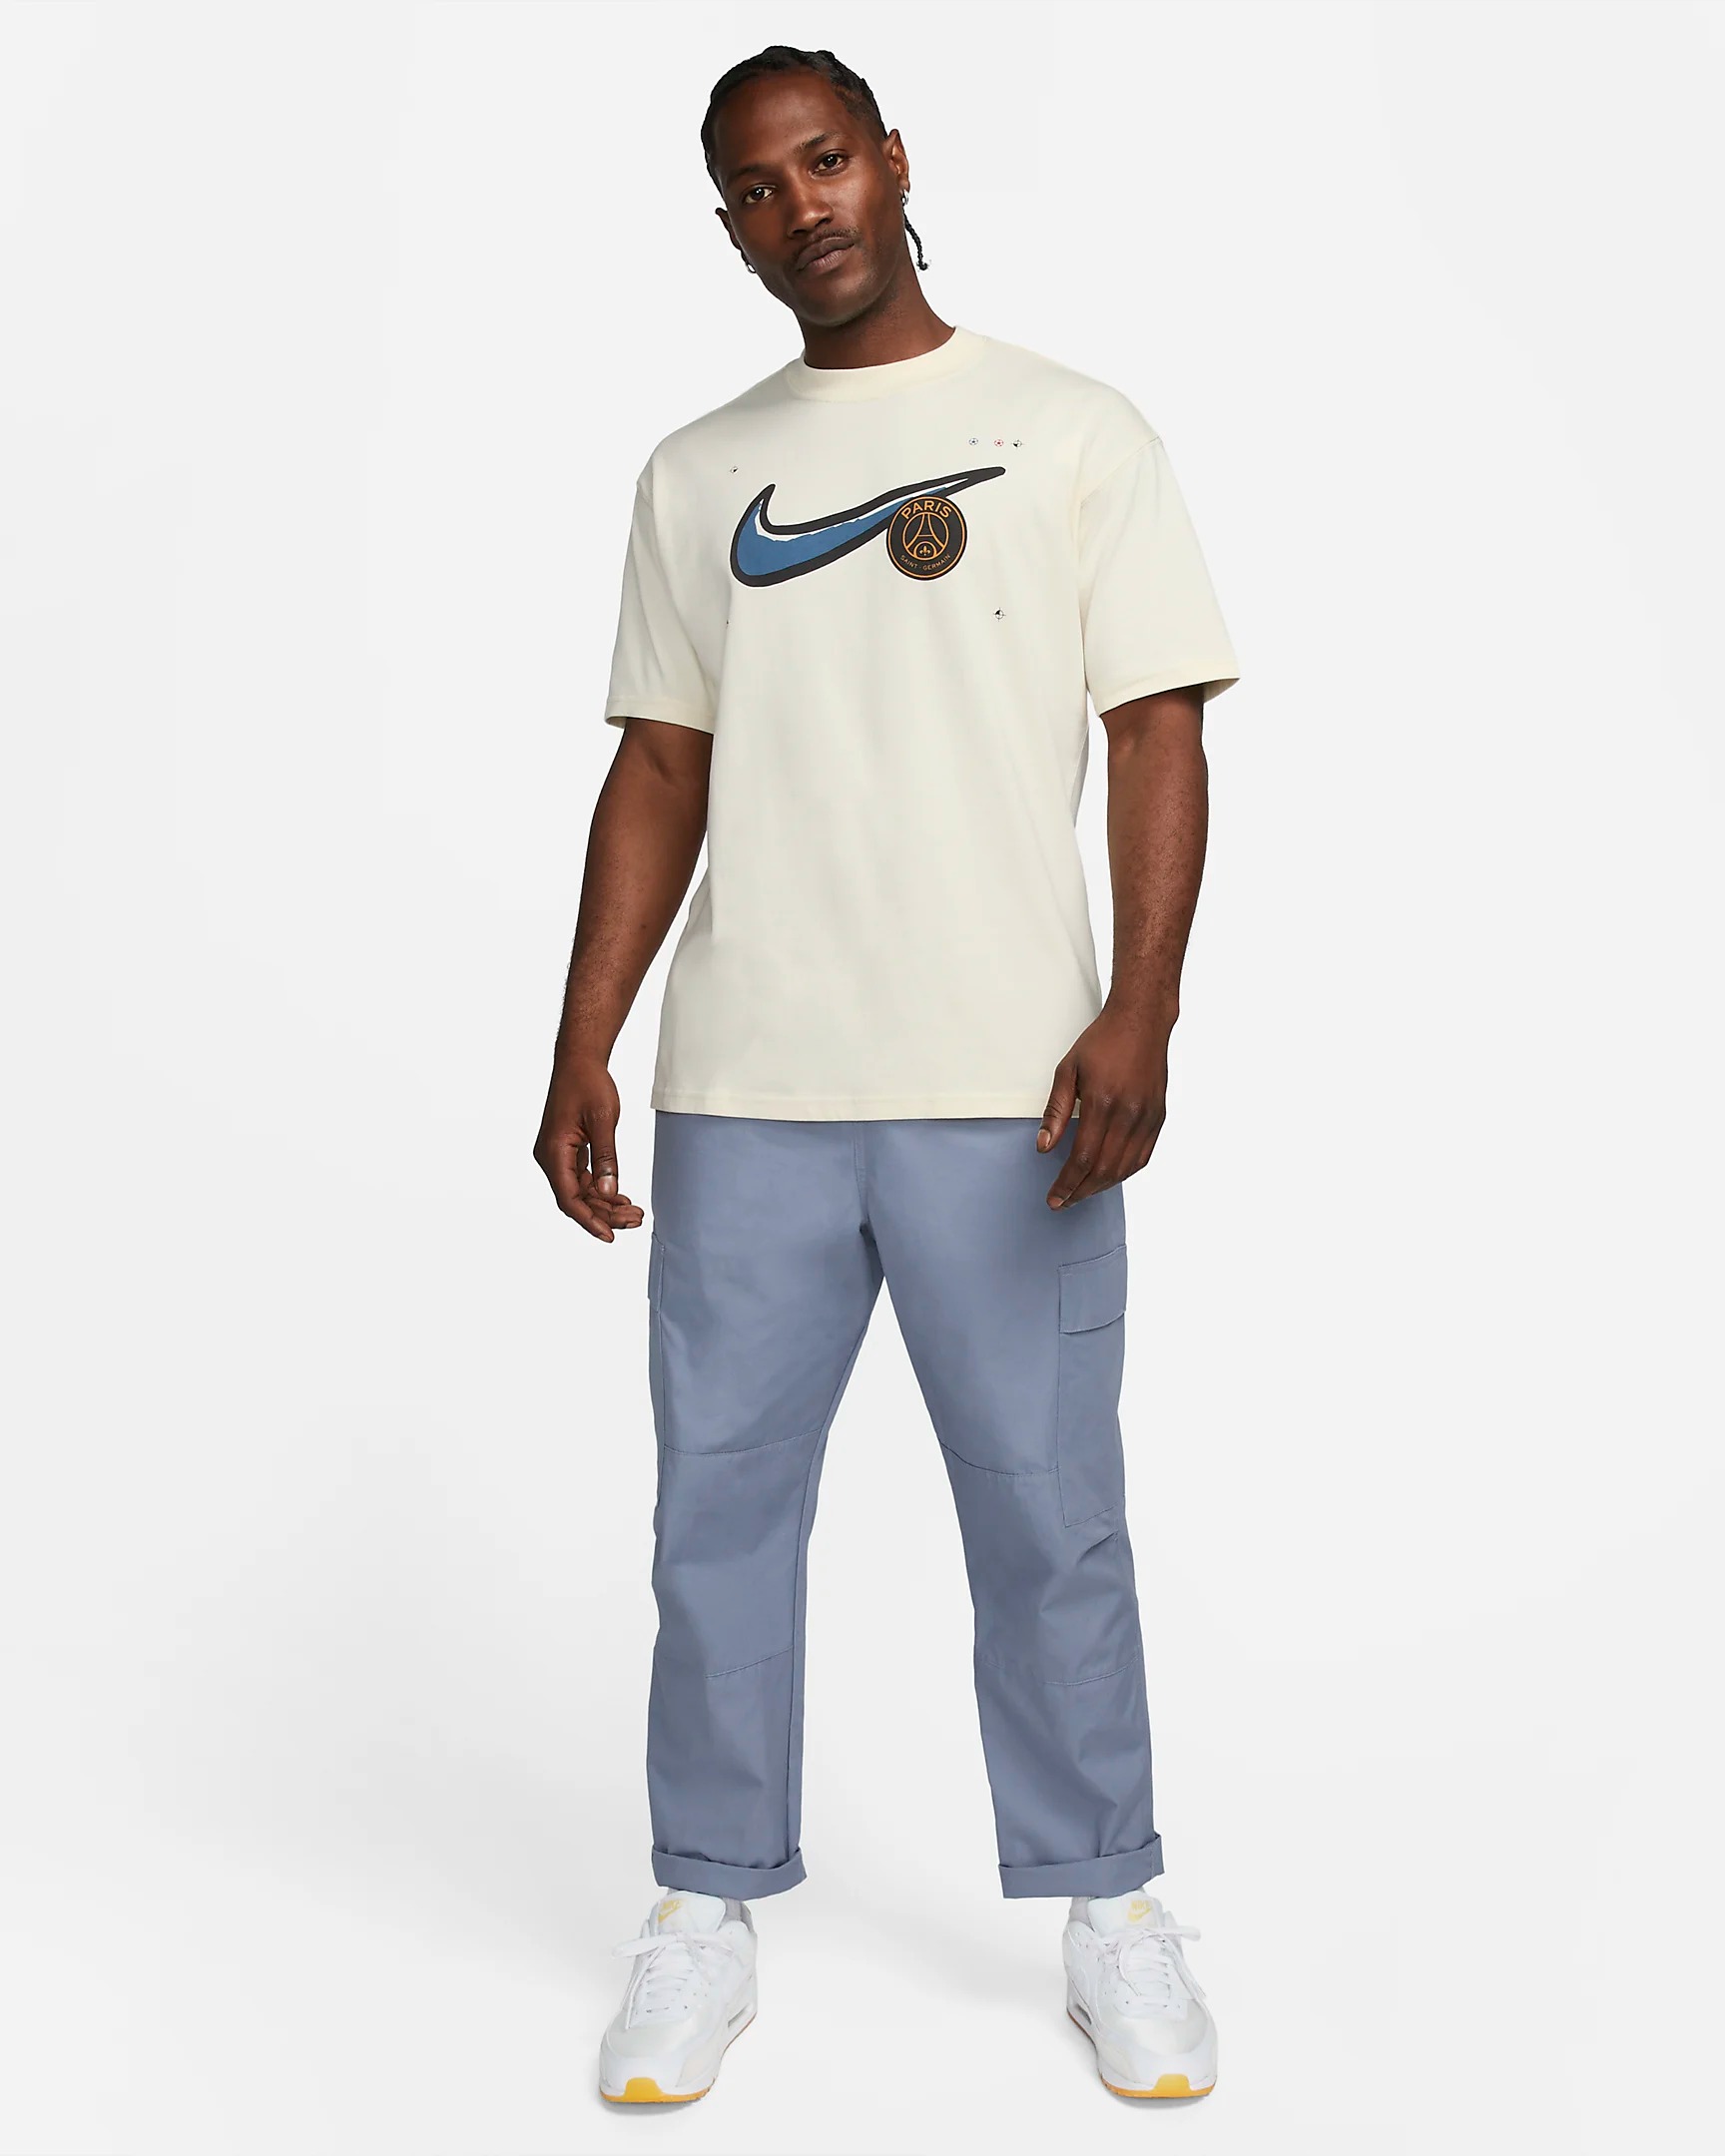 パリサンジェルマン ナイキ コラボ PSG Nike USサイズ マックス90 サッカー Tシャツ 半袖 クレスト メンズ サッカー Tシャツ  ユニセックス Jordan ジョーダン 正規品 FJ1849-113[衣類] | WILLS